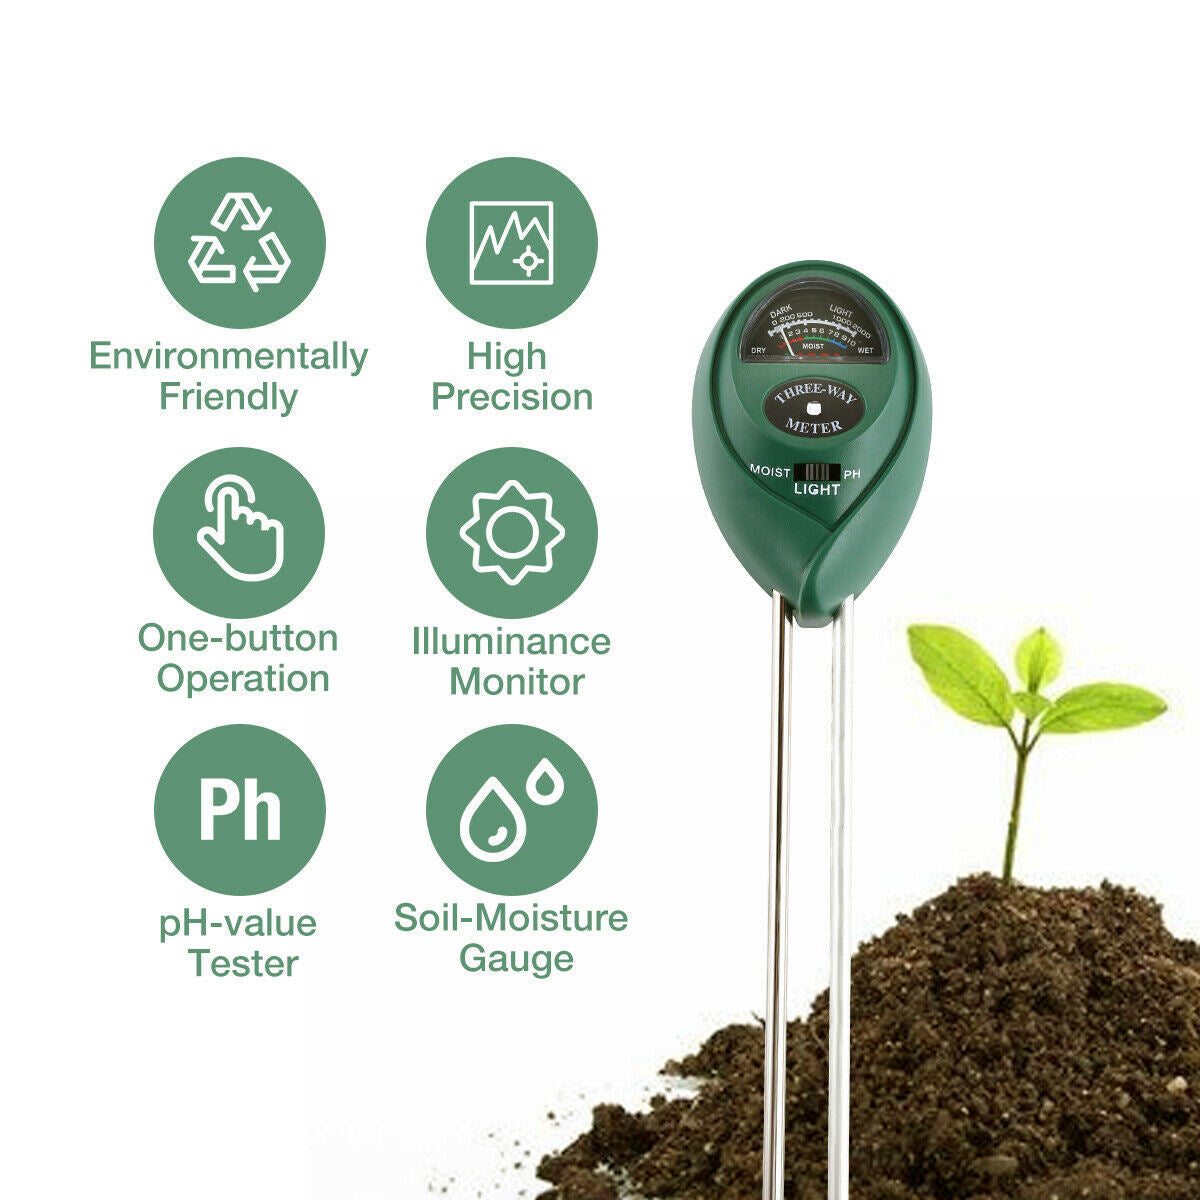 3 In1 Soil Tester Water PH Moisture Light Test Meter Kit For Garden Plant Flower